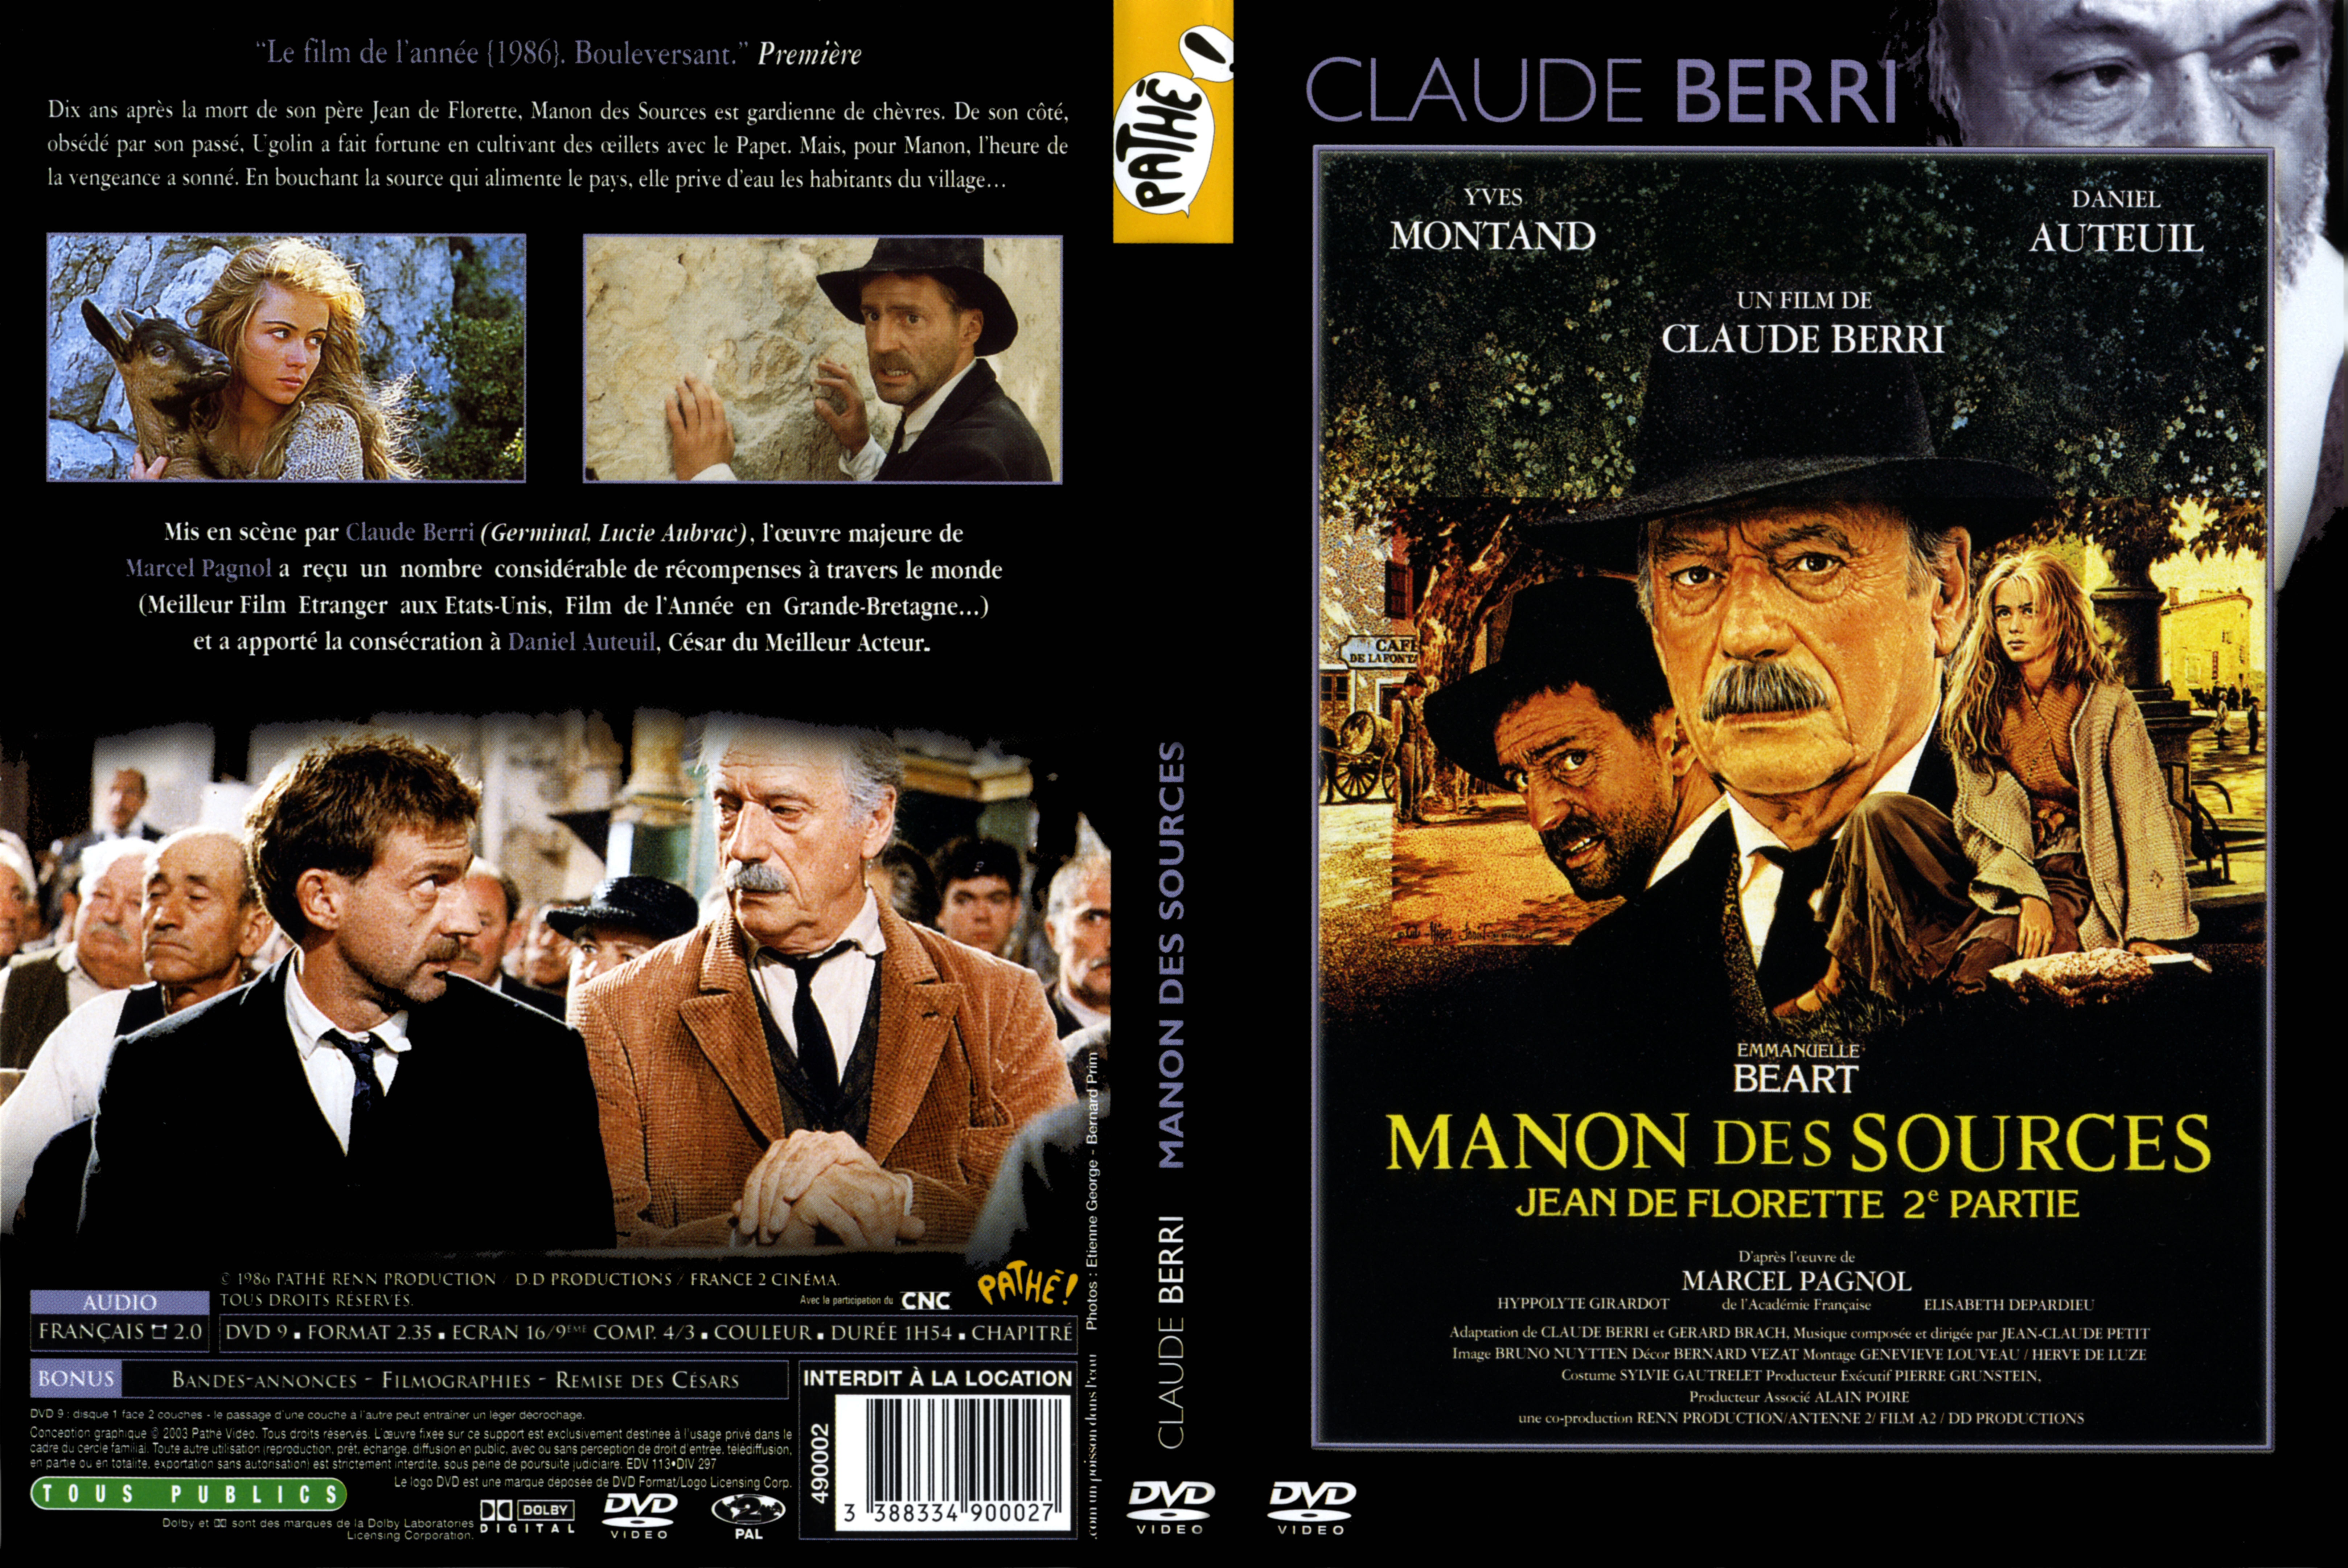 Jaquette DVD Manon des sources v3